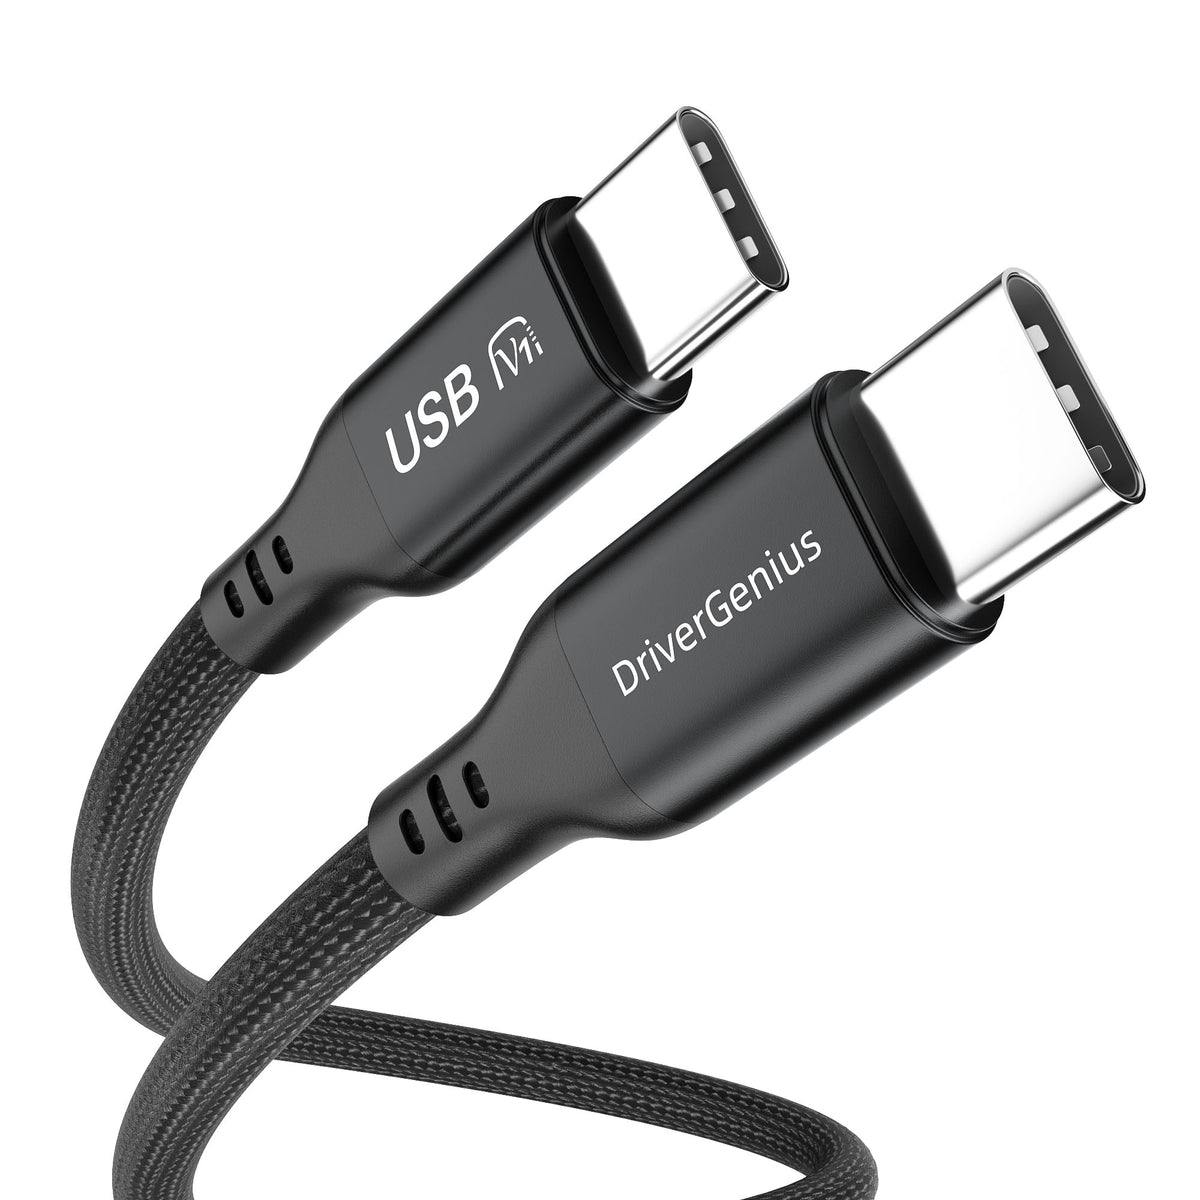 Adaptador USB C a Gigabit (10/100/1000) / mod UT-GBUSBC - 0060130